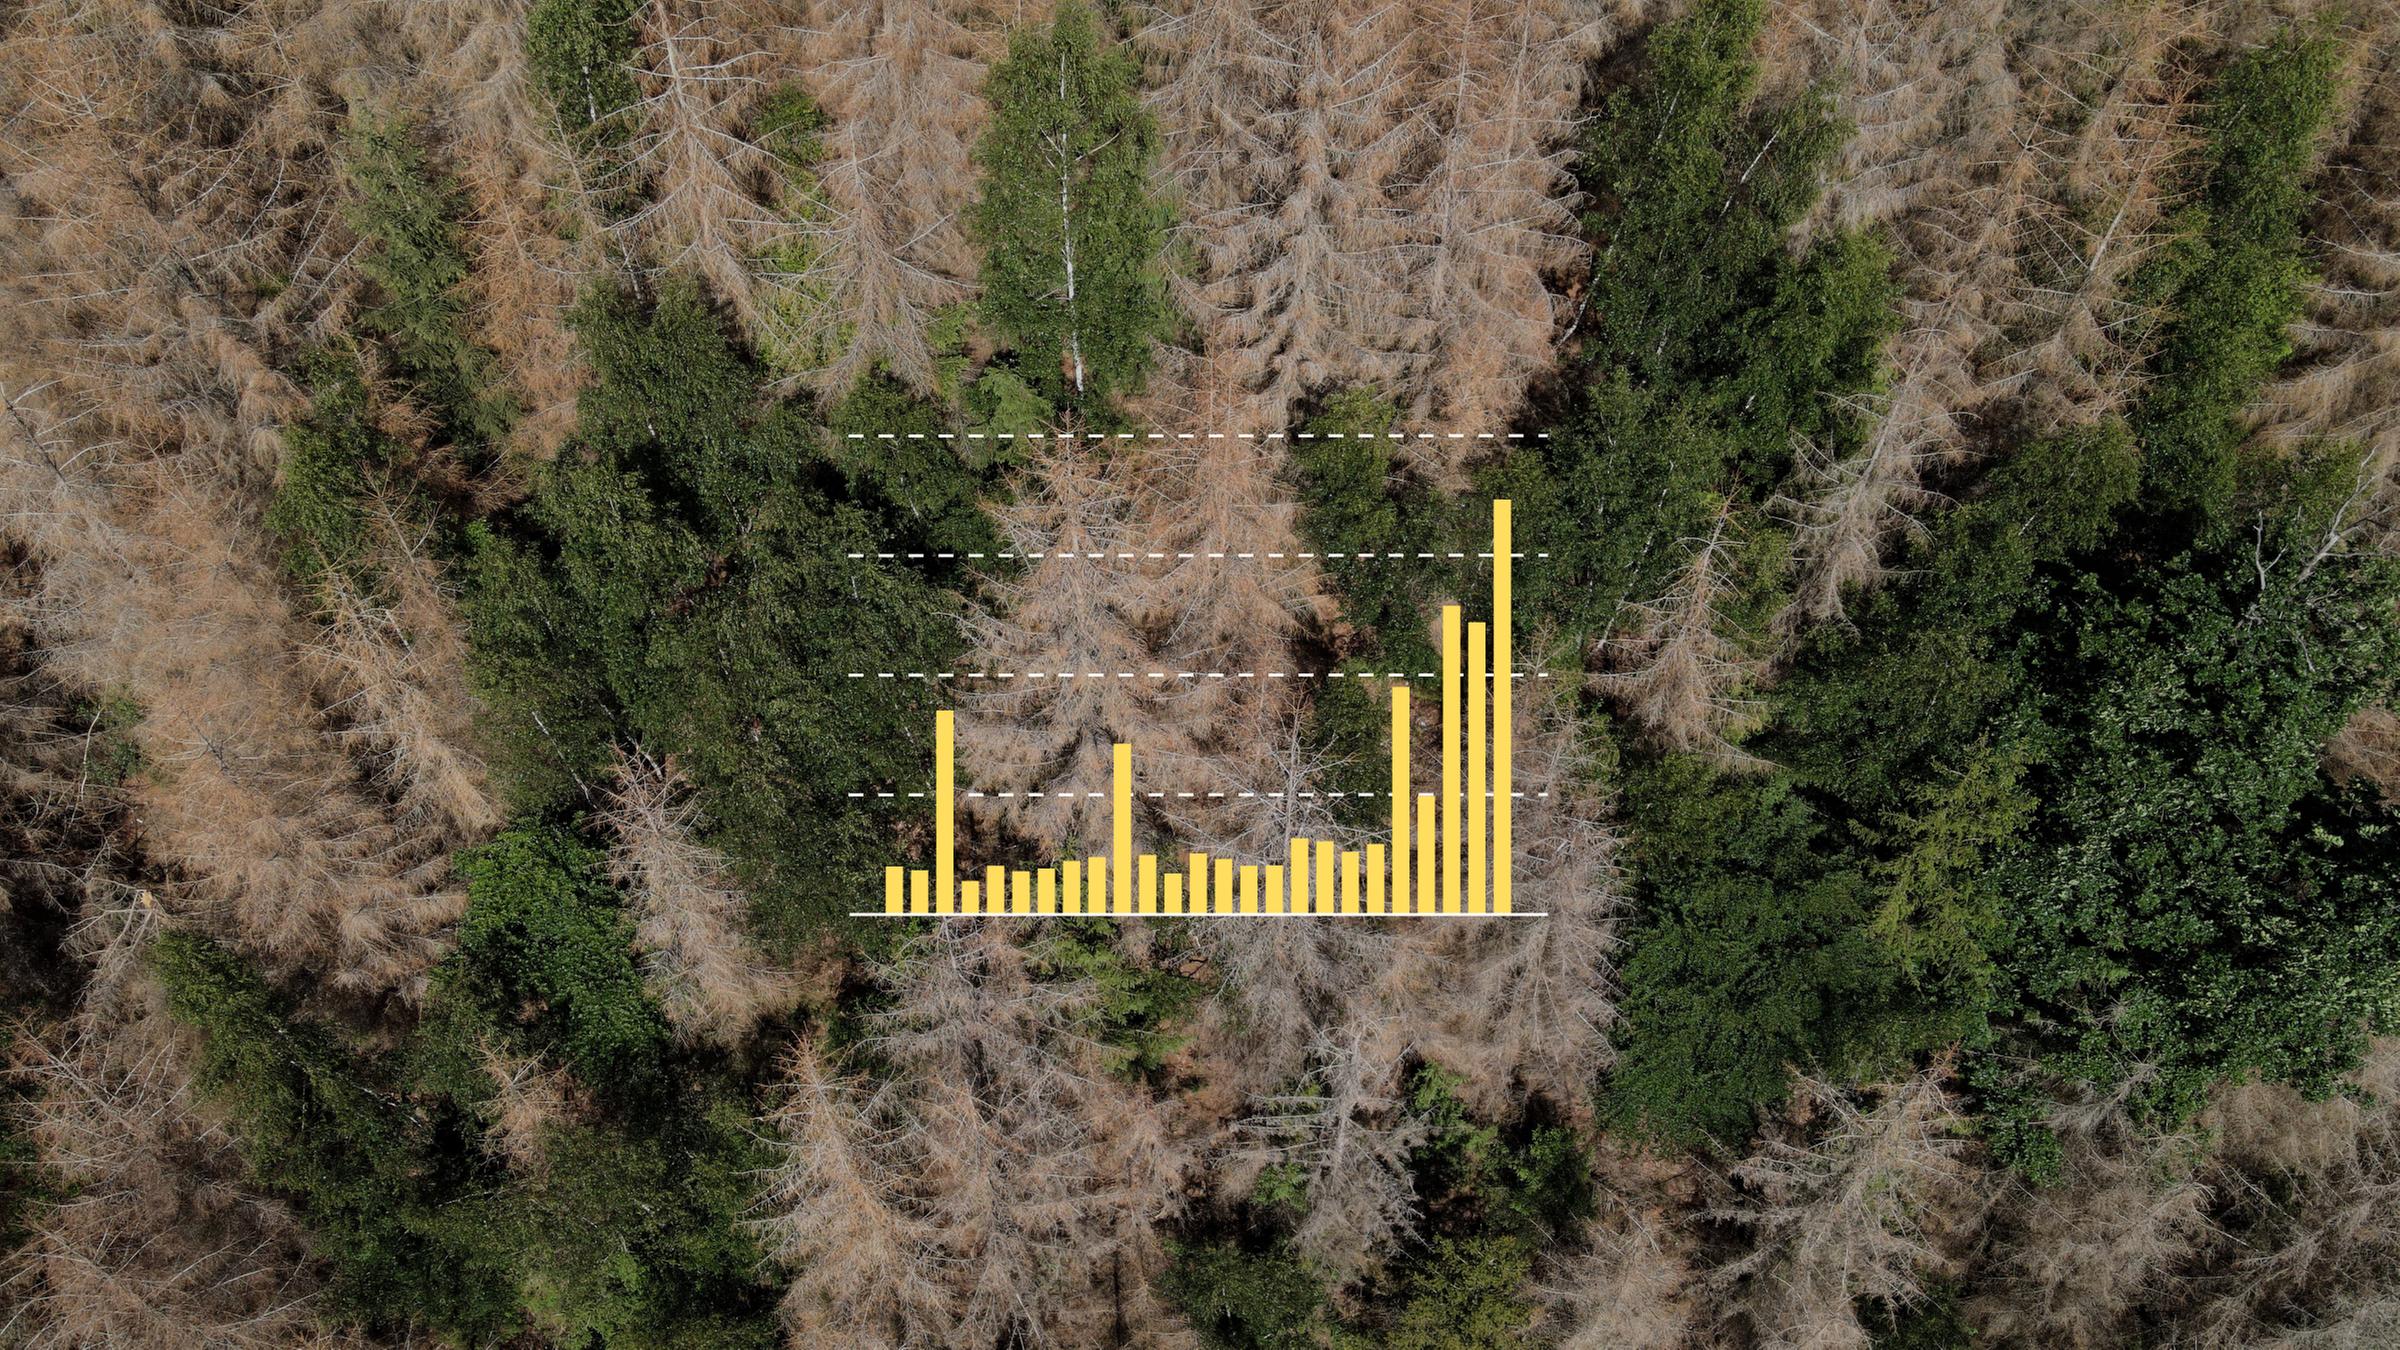 Tote Fichten stehen in einem Wald zwischen gesunden Bäumen, darüber eine Grafik zur Zahl der toten Bäume